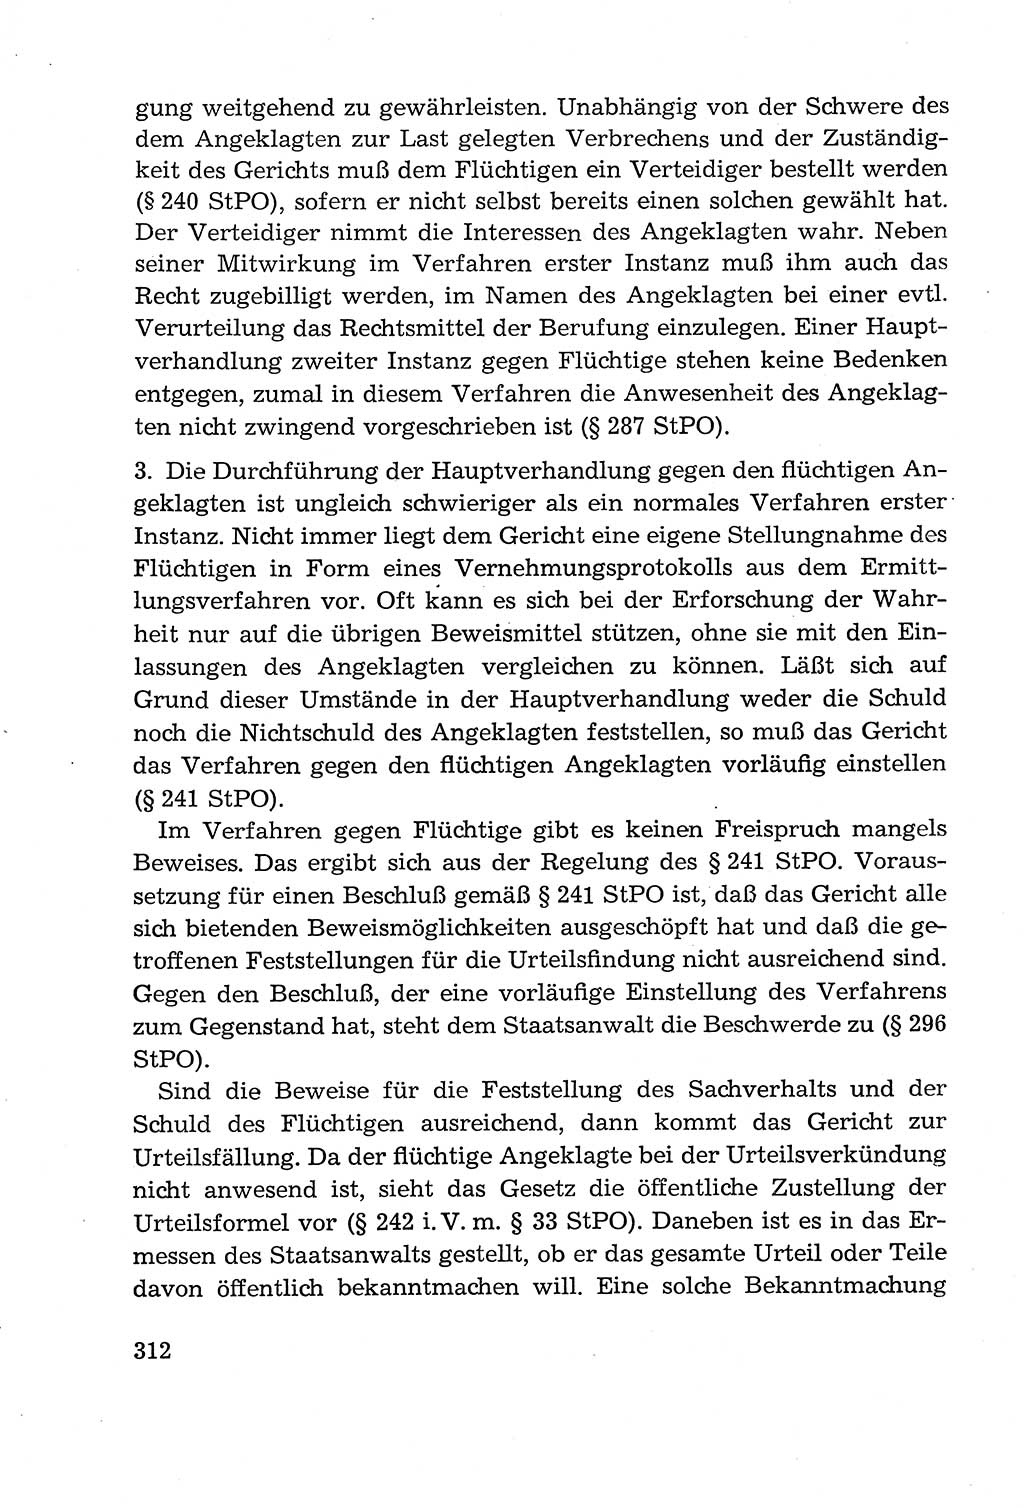 Leitfaden des Strafprozeßrechts der Deutschen Demokratischen Republik (DDR) 1959, Seite 312 (LF StPR DDR 1959, S. 312)